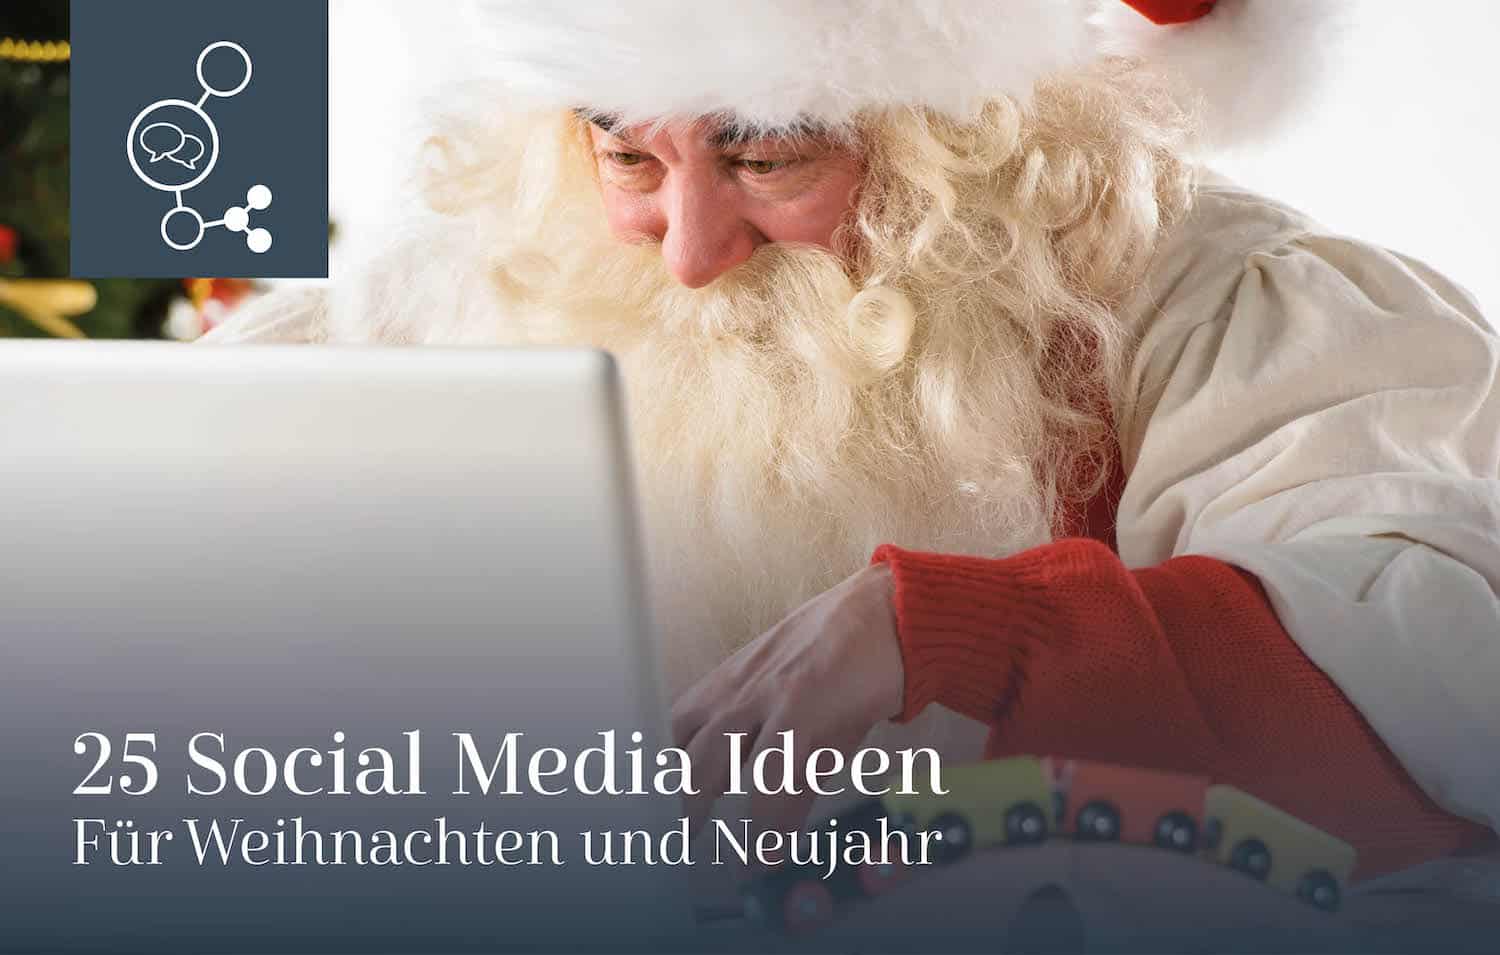 Social media ideen für weihnachten und Neujahr